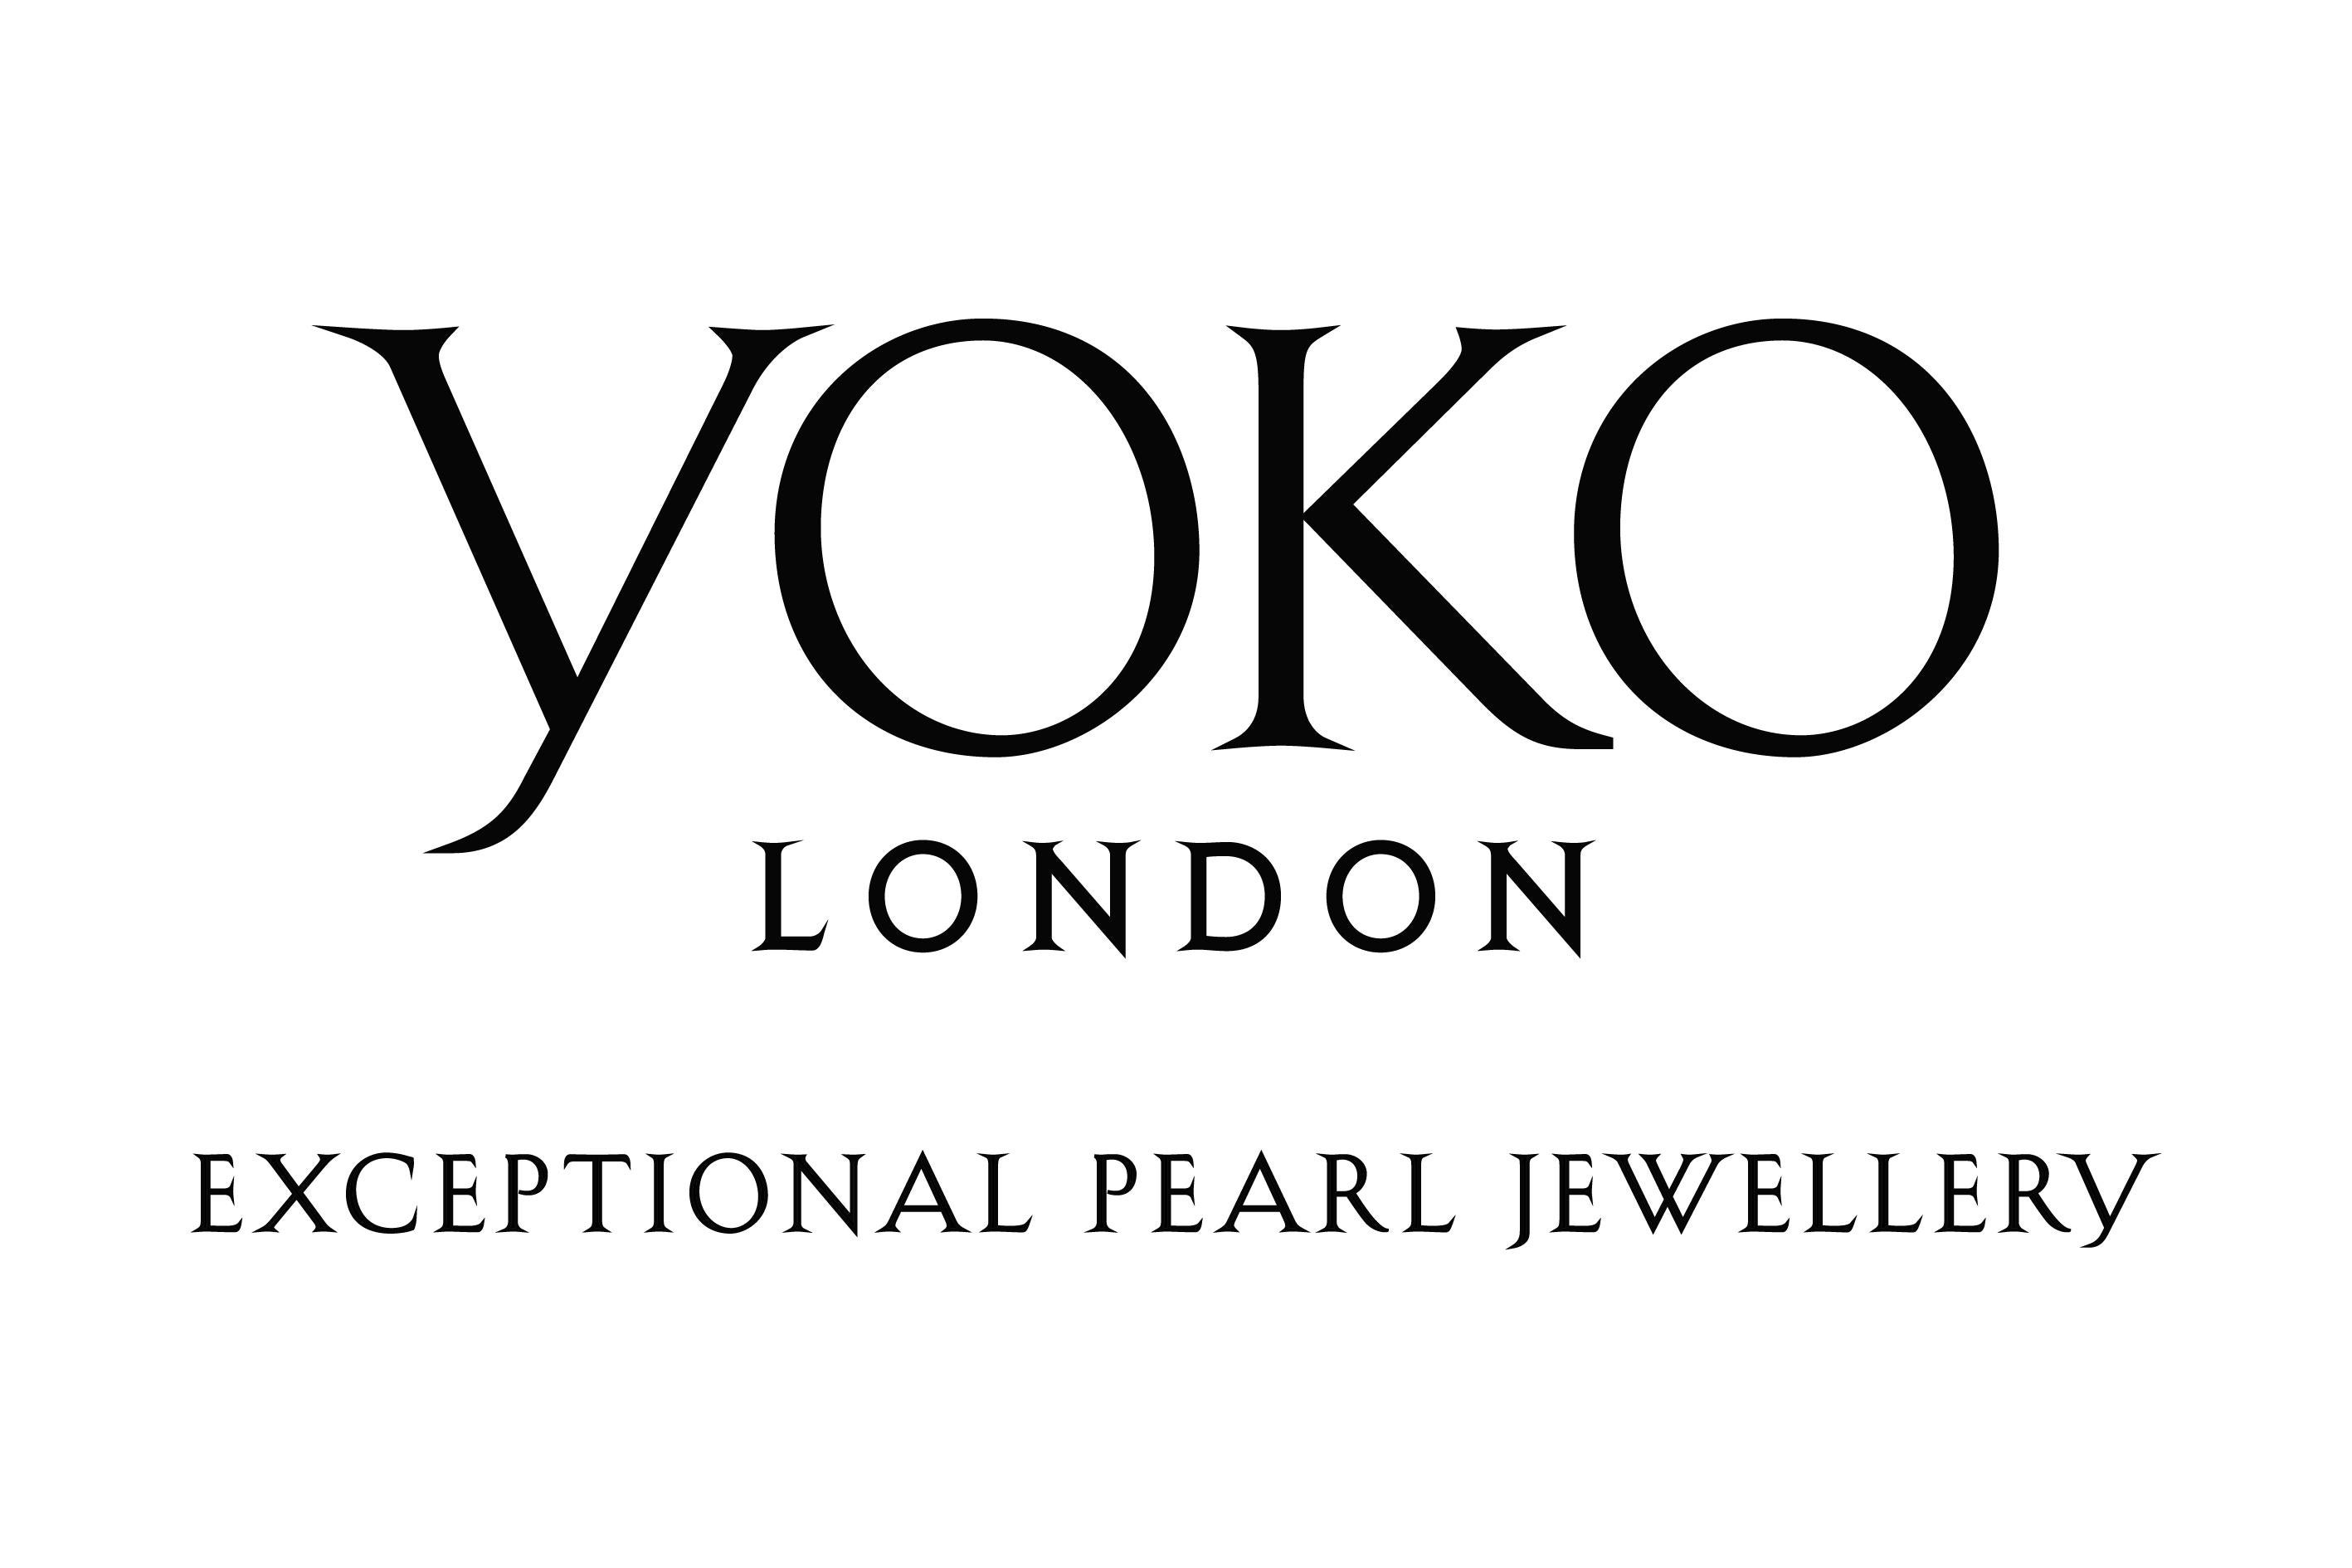 Yoko London Golden South Sea Pearl Stud Earrings Set in 18 Karat White Gold 3